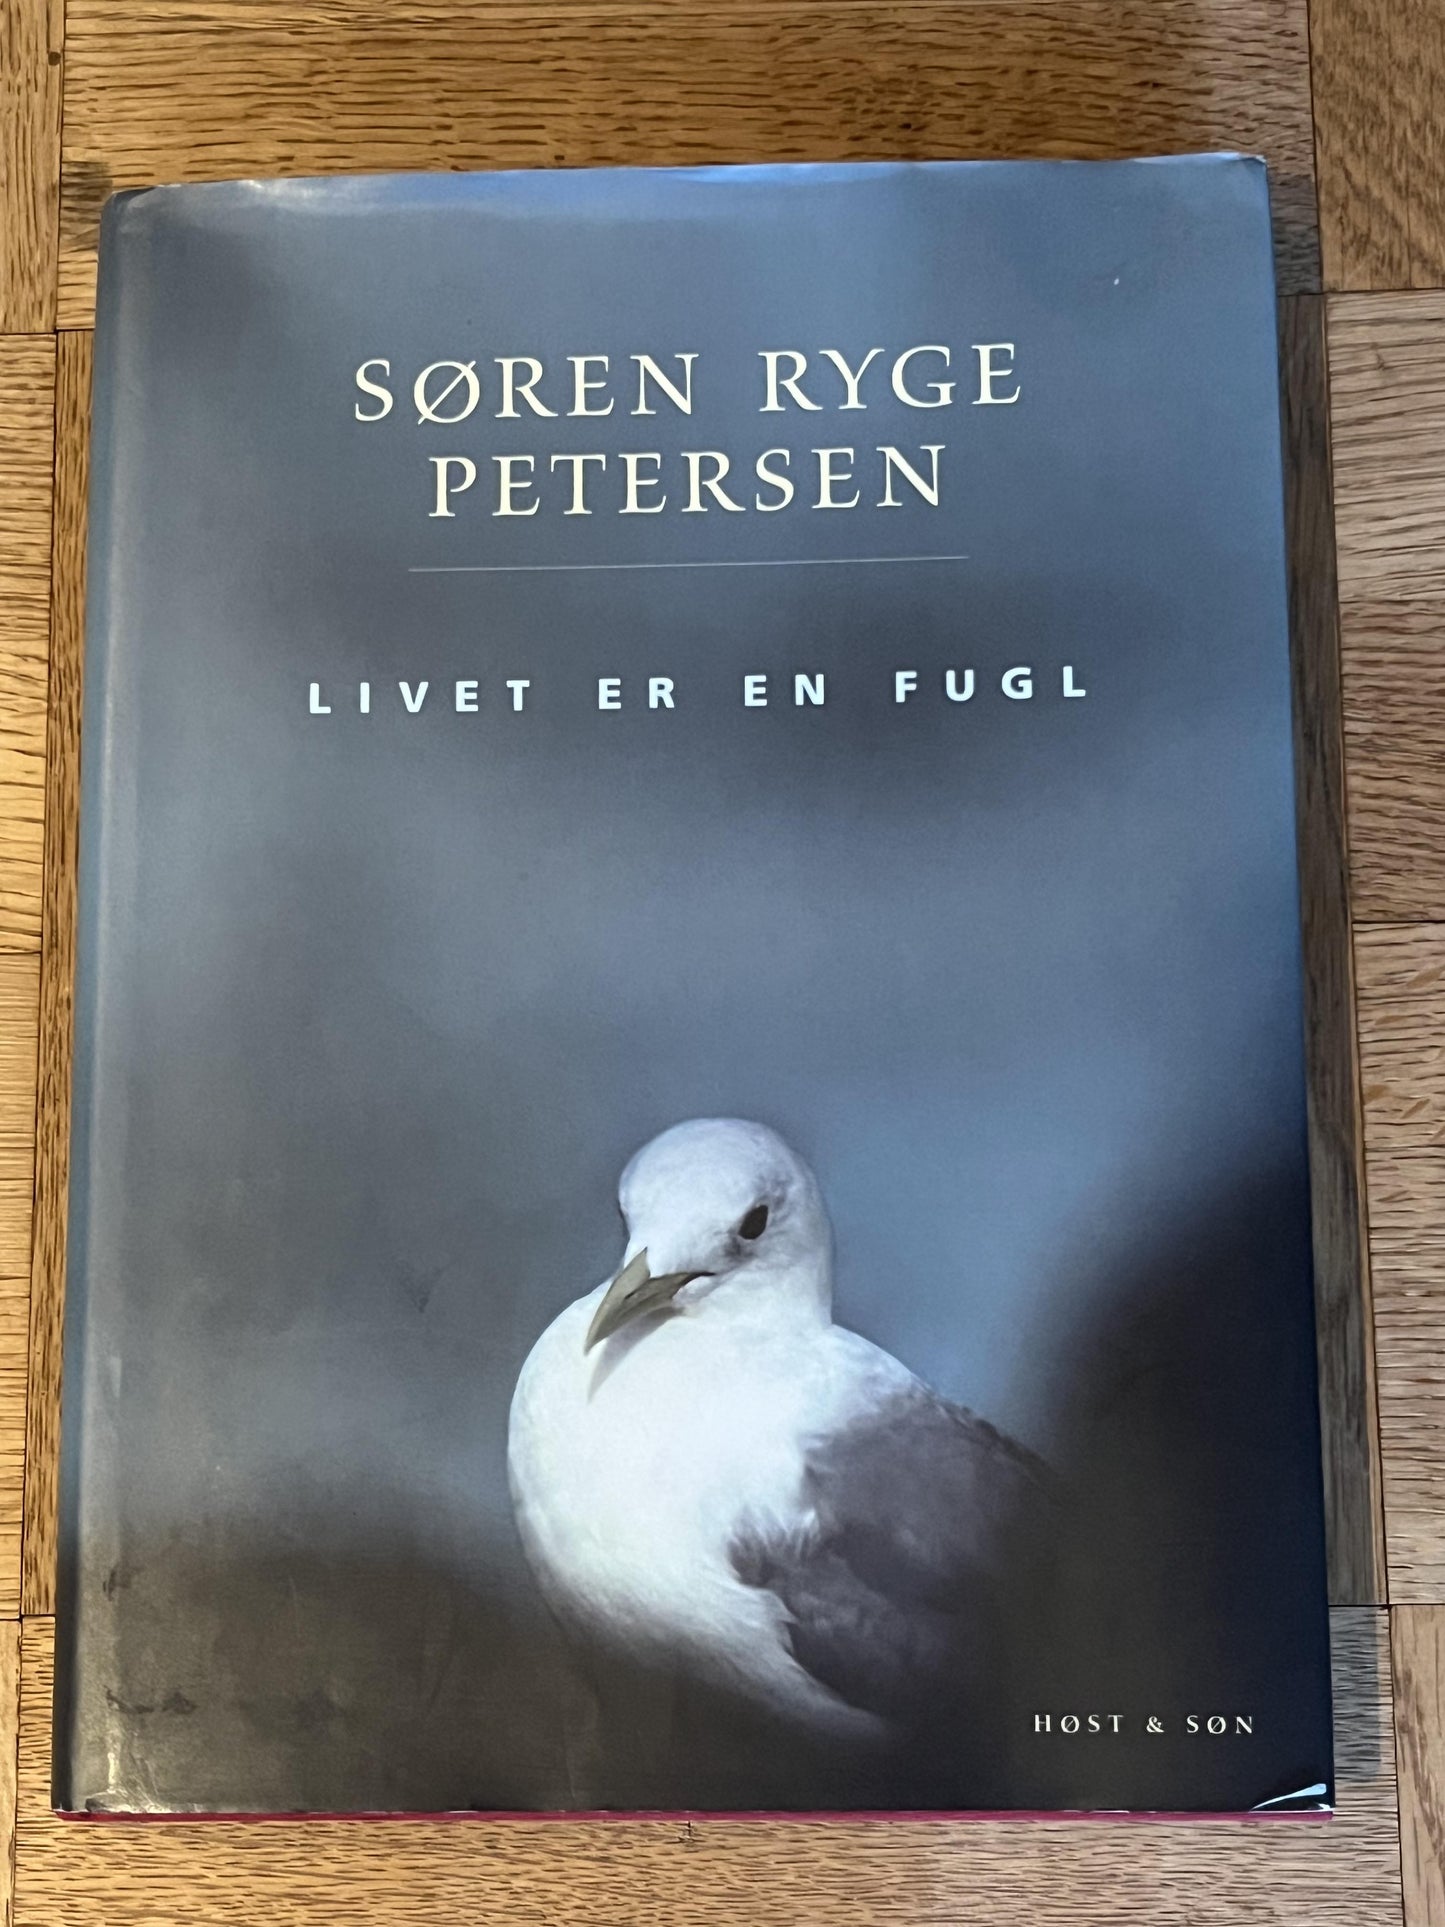 Livet er en fugl af Søren Ryge Petersen